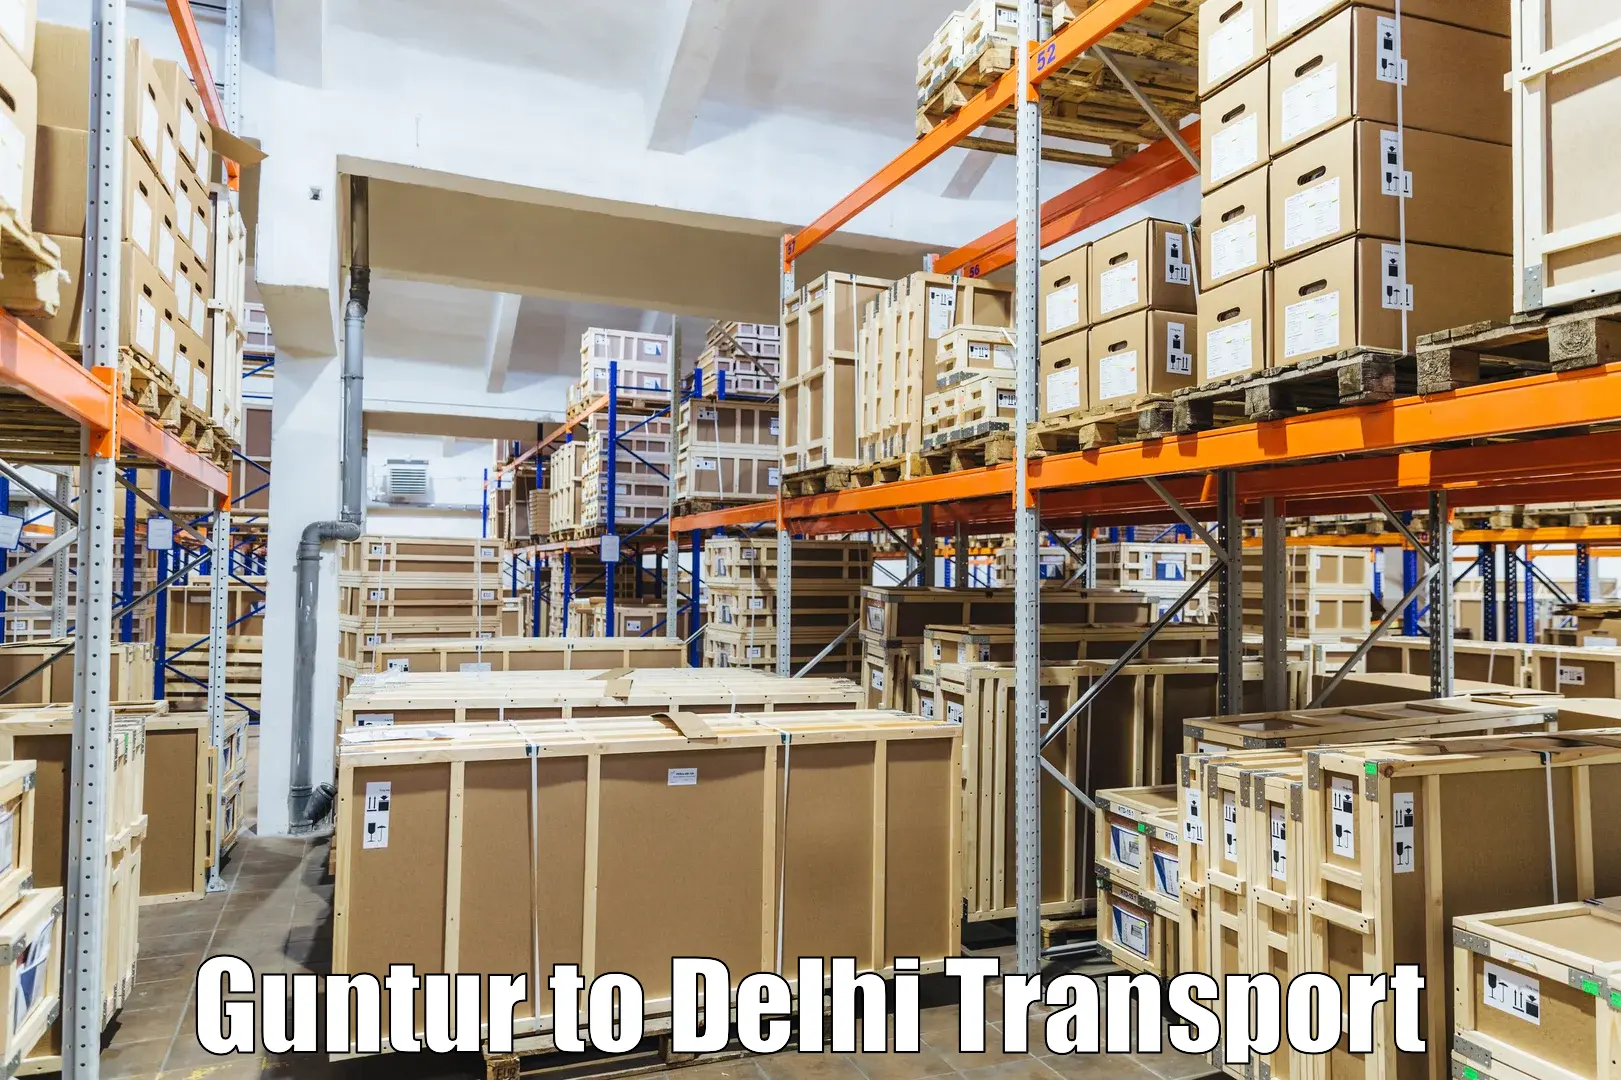 Transport in sharing Guntur to Delhi